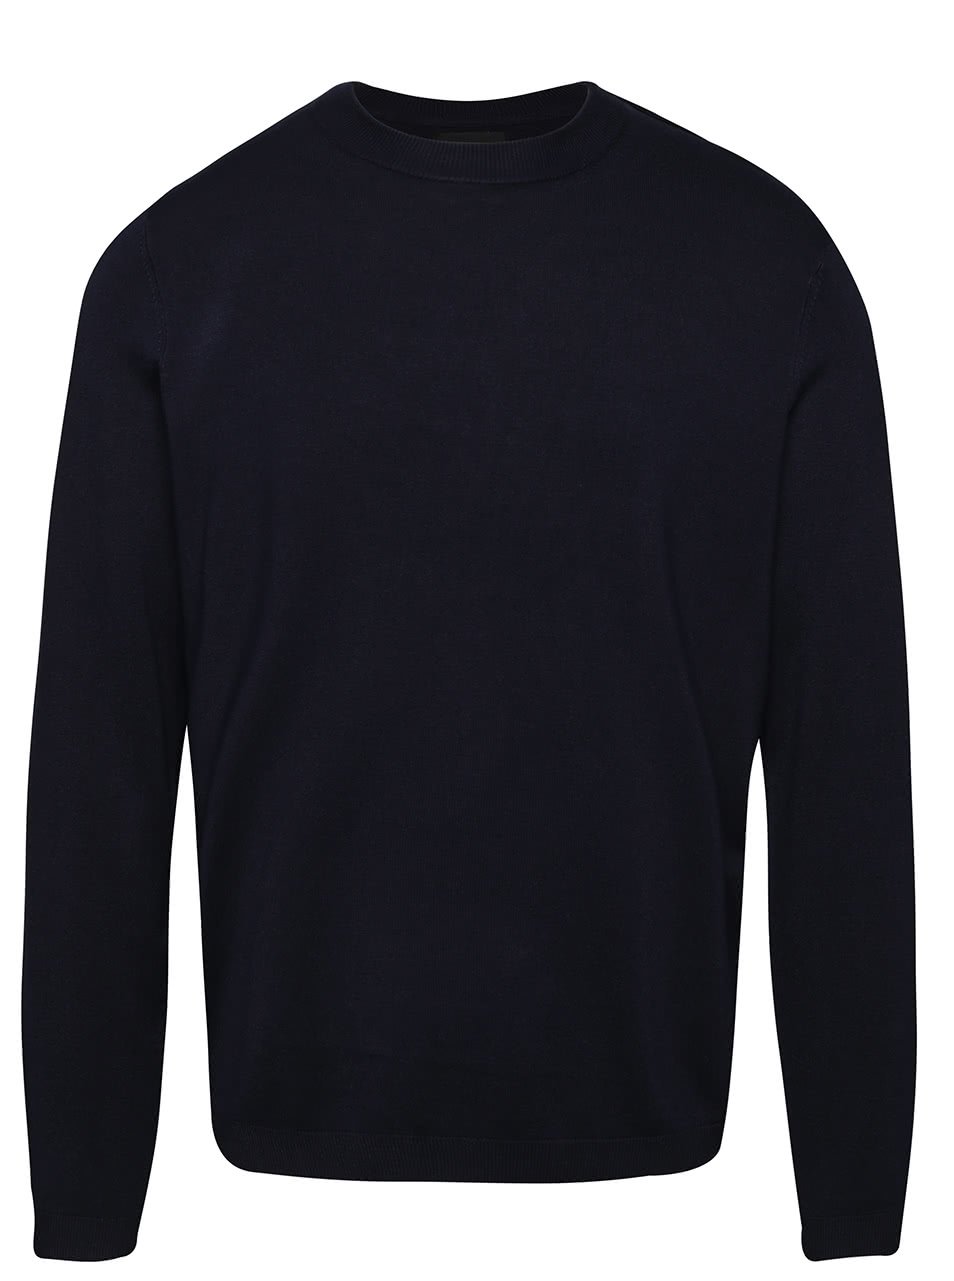 Tmavě modrý svetr Burton Menswear London